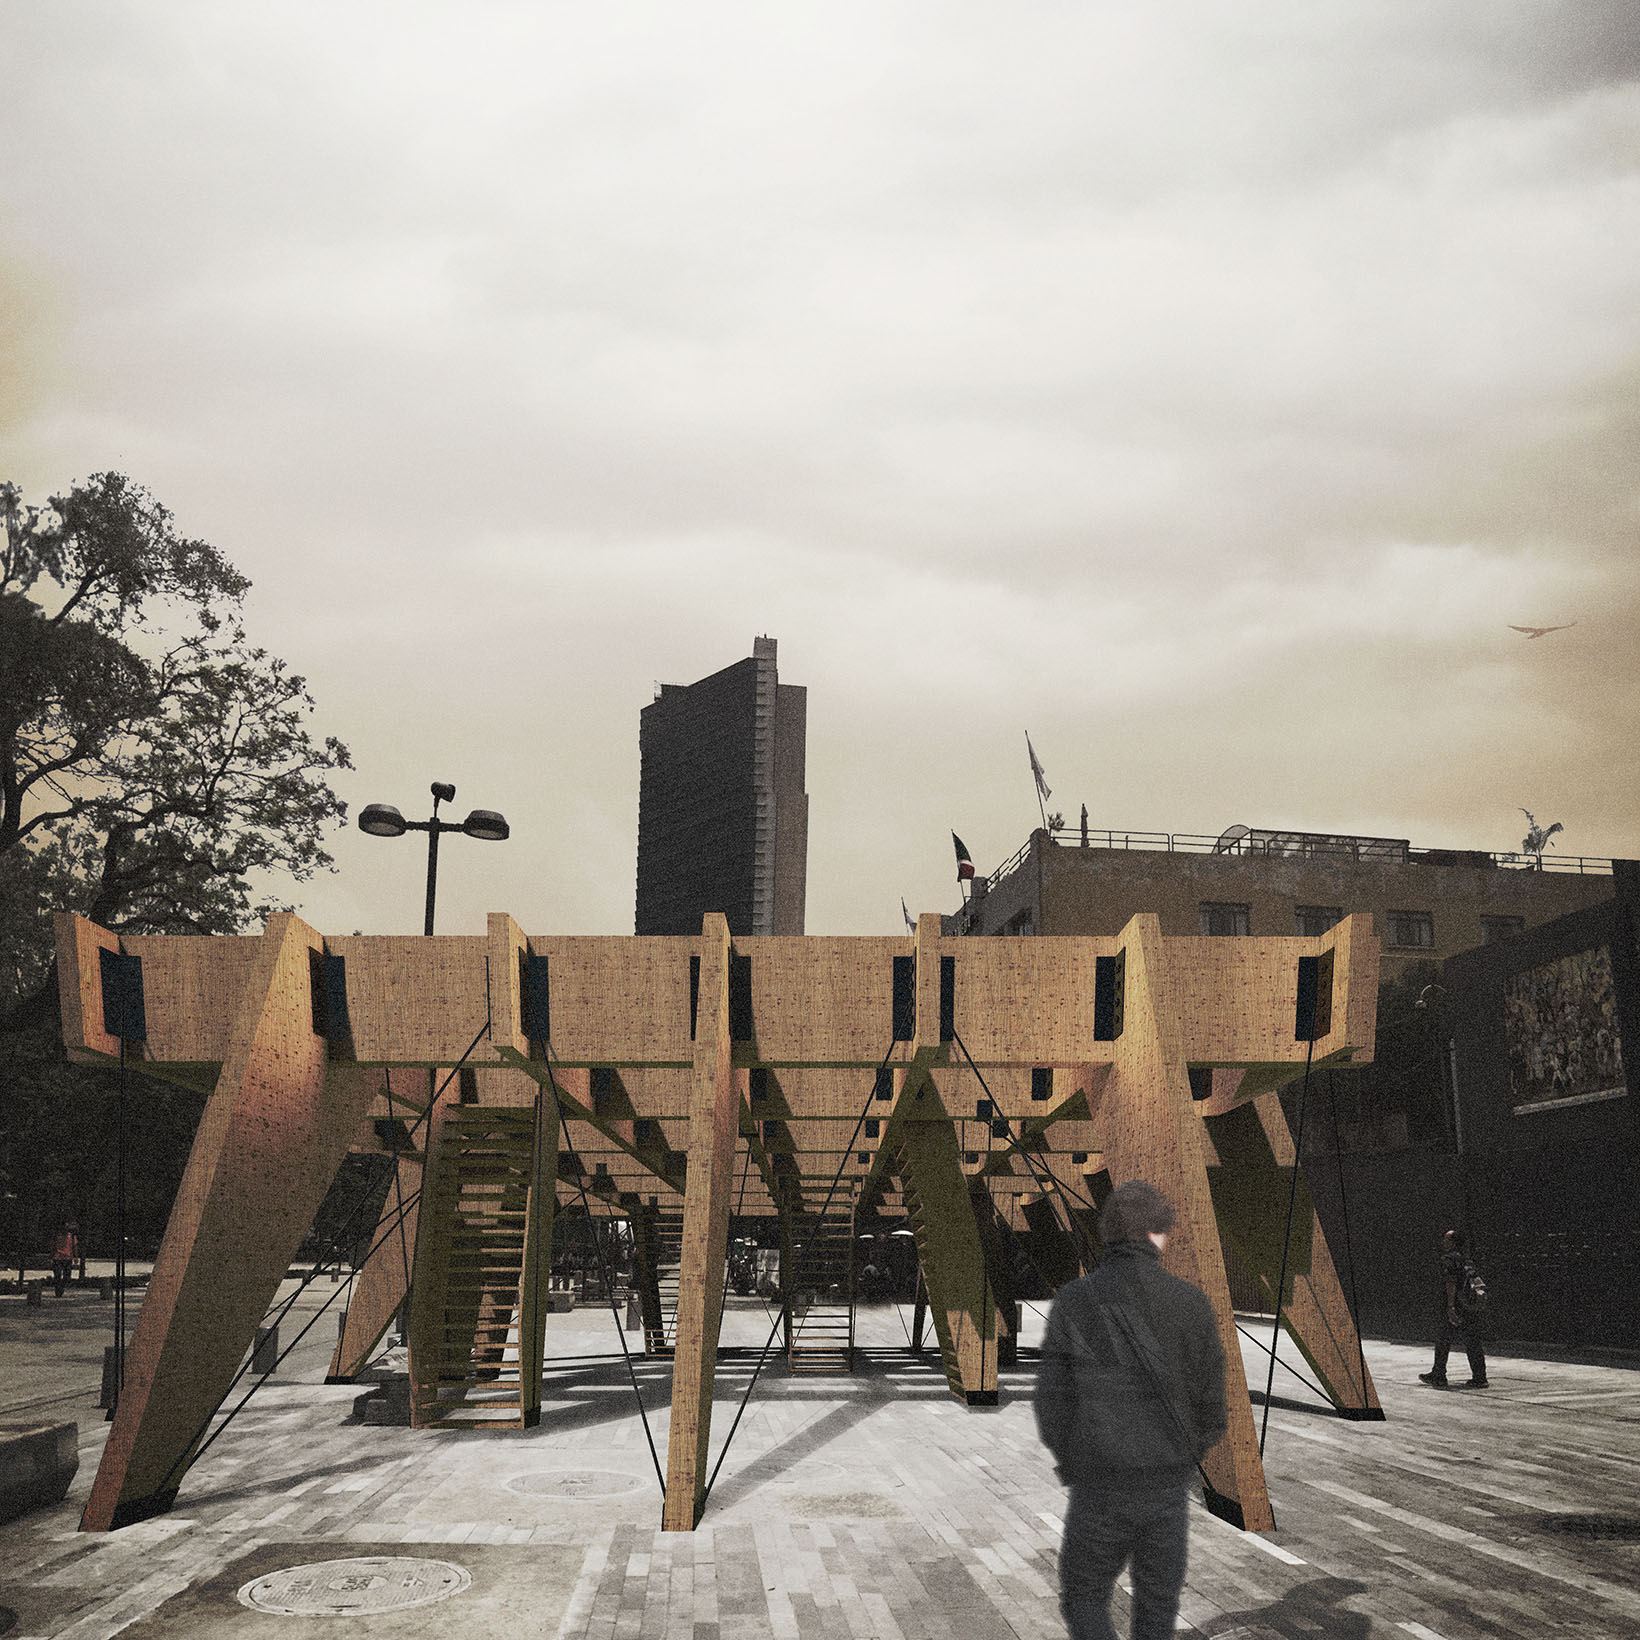 Project CLOUD9 by Recon Architecture, architecture studio in Bilbao